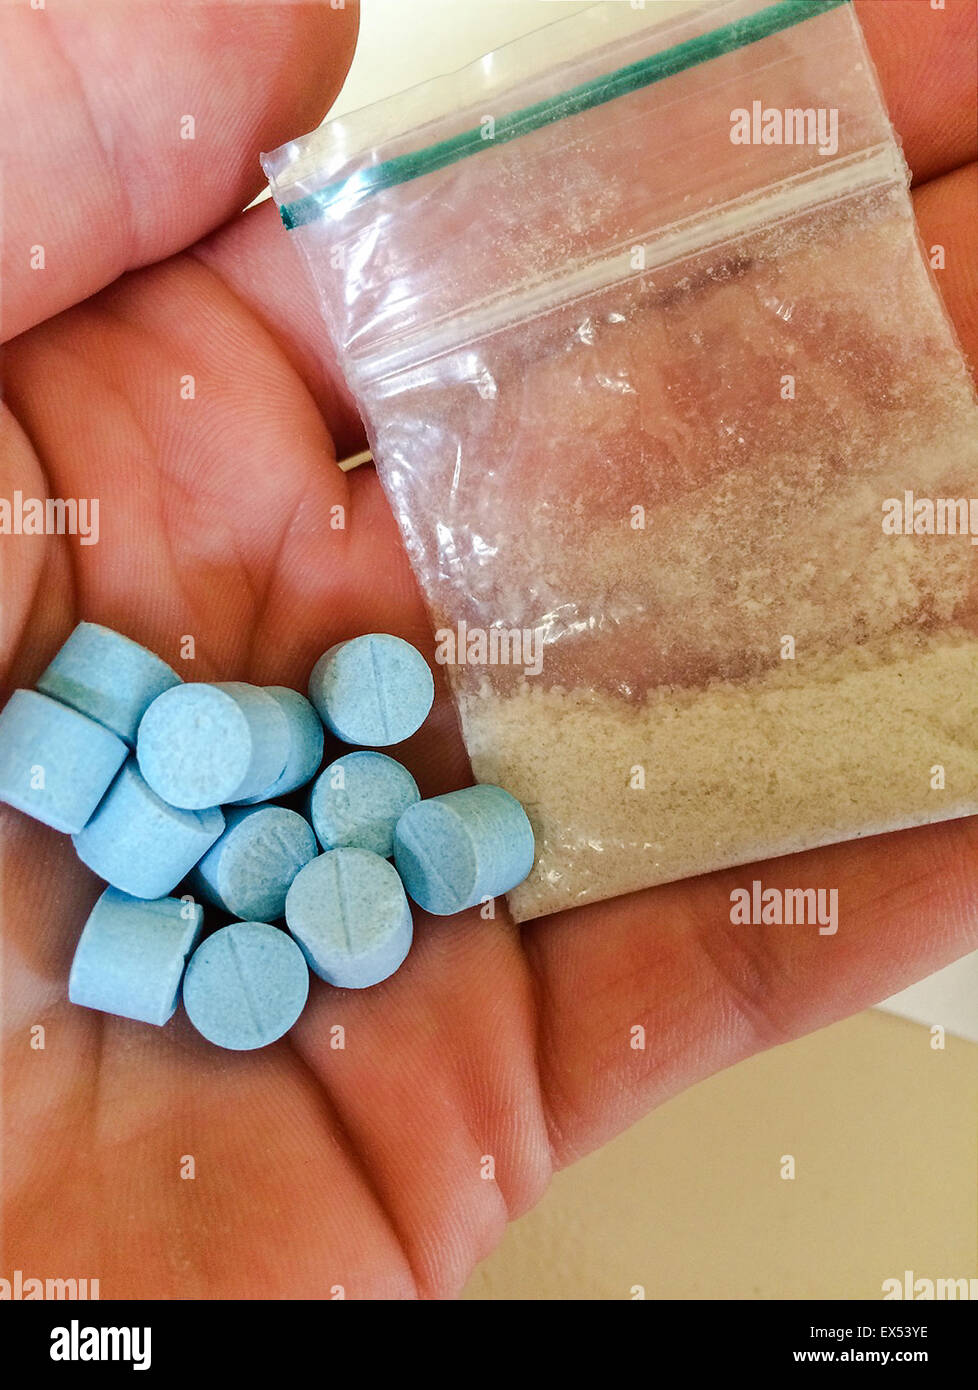 1 Gramm MDMA (Ecstasy) in kristalliner Form in einem "Tütchen" (selbst seal  Tasche) mit 12 Ecstasy-Pillen namens "Blaue Rolex" mit rund 200mg MDMA  (3,4-Methylendioxy-N-Methylamphetamin) jeder. Pillen sind eine Mischung von  MDMA in